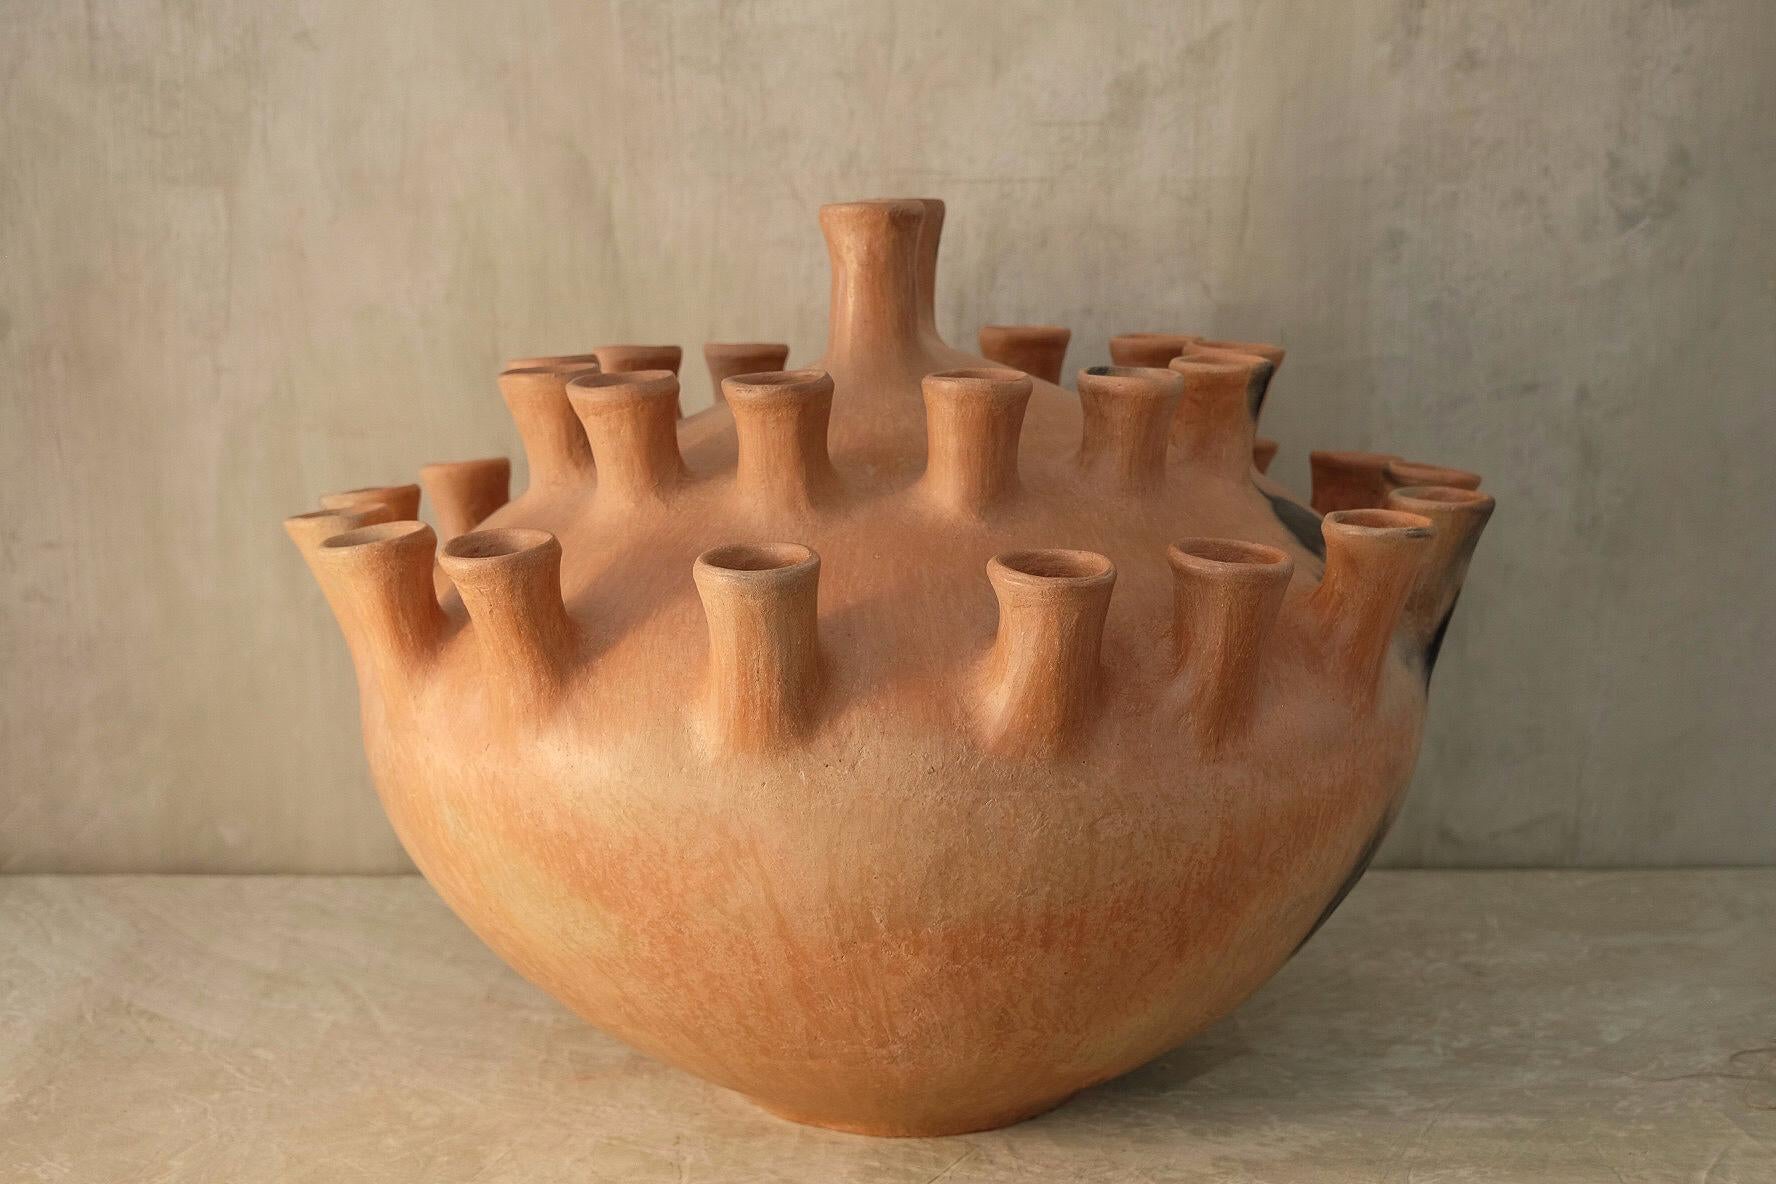 Vase Zoila d'Onora
Dimensions : D 70 x H 70 cm
Matériaux : Argile

Inspirée par les récipients traditionnels de grand format utilisés pour stocker l'eau, les céréales ou préparer la nourriture, notre réinterprétation ludique de la poterie Mixe rend